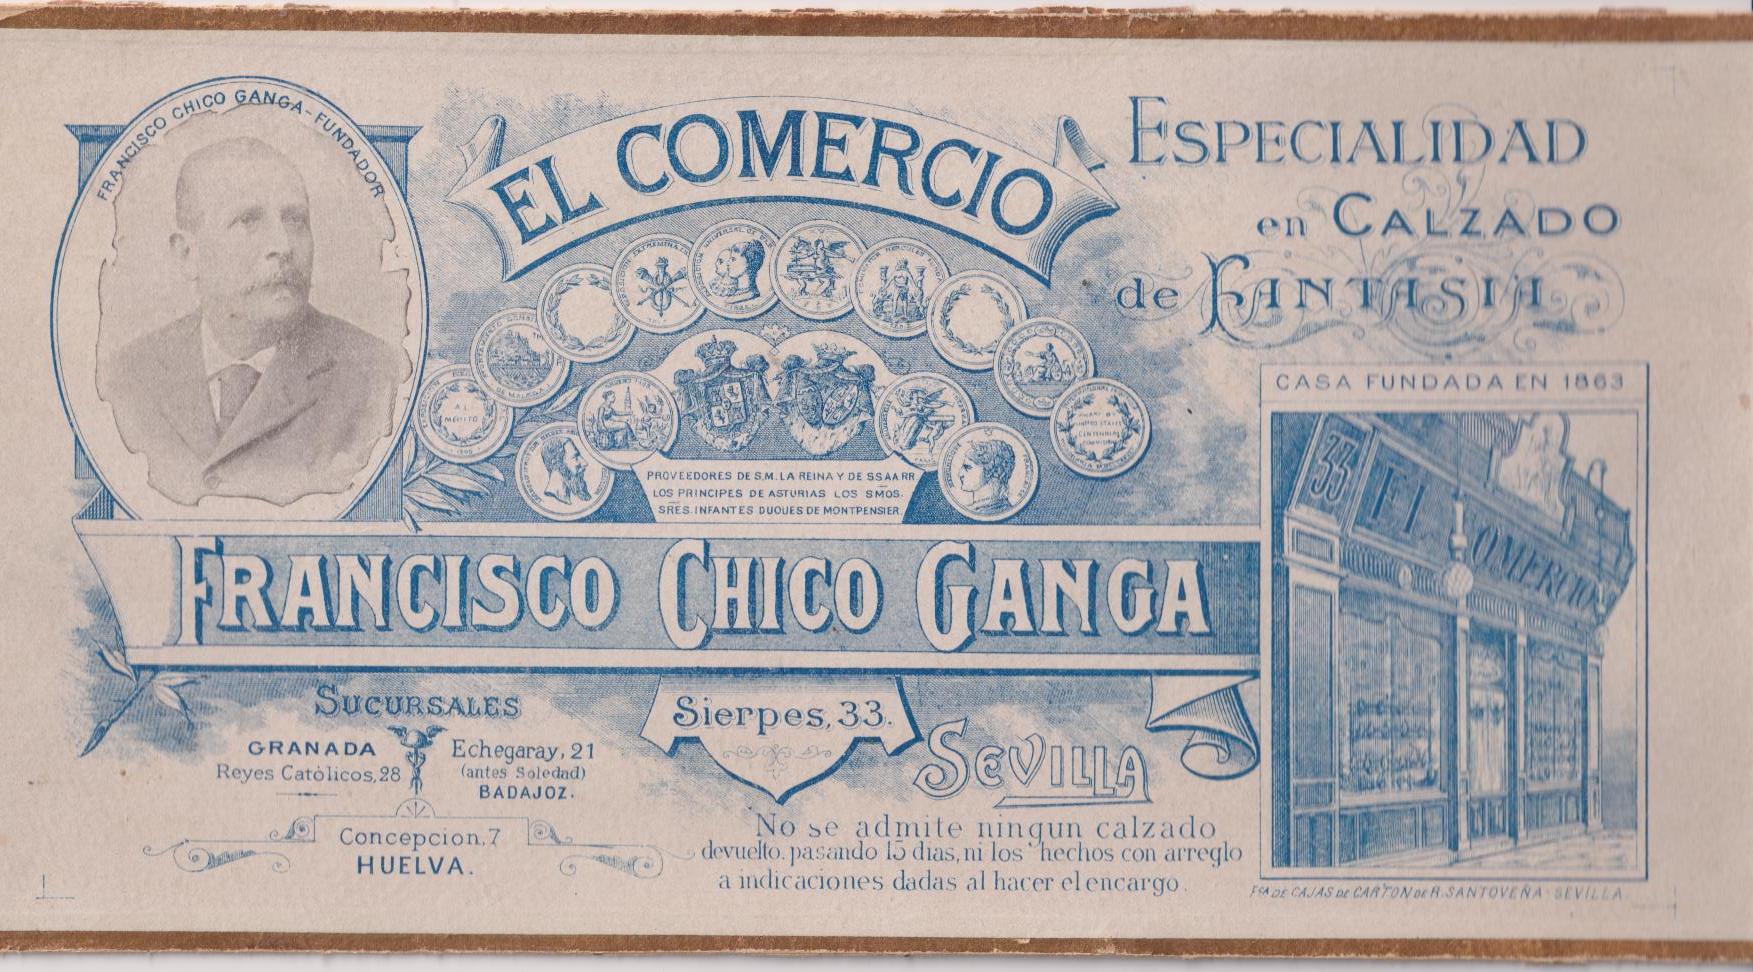 El Comercio. Francisco Chico Ganga. Tapa Caja de Cartón? Sevilla. Principios Siglo XX